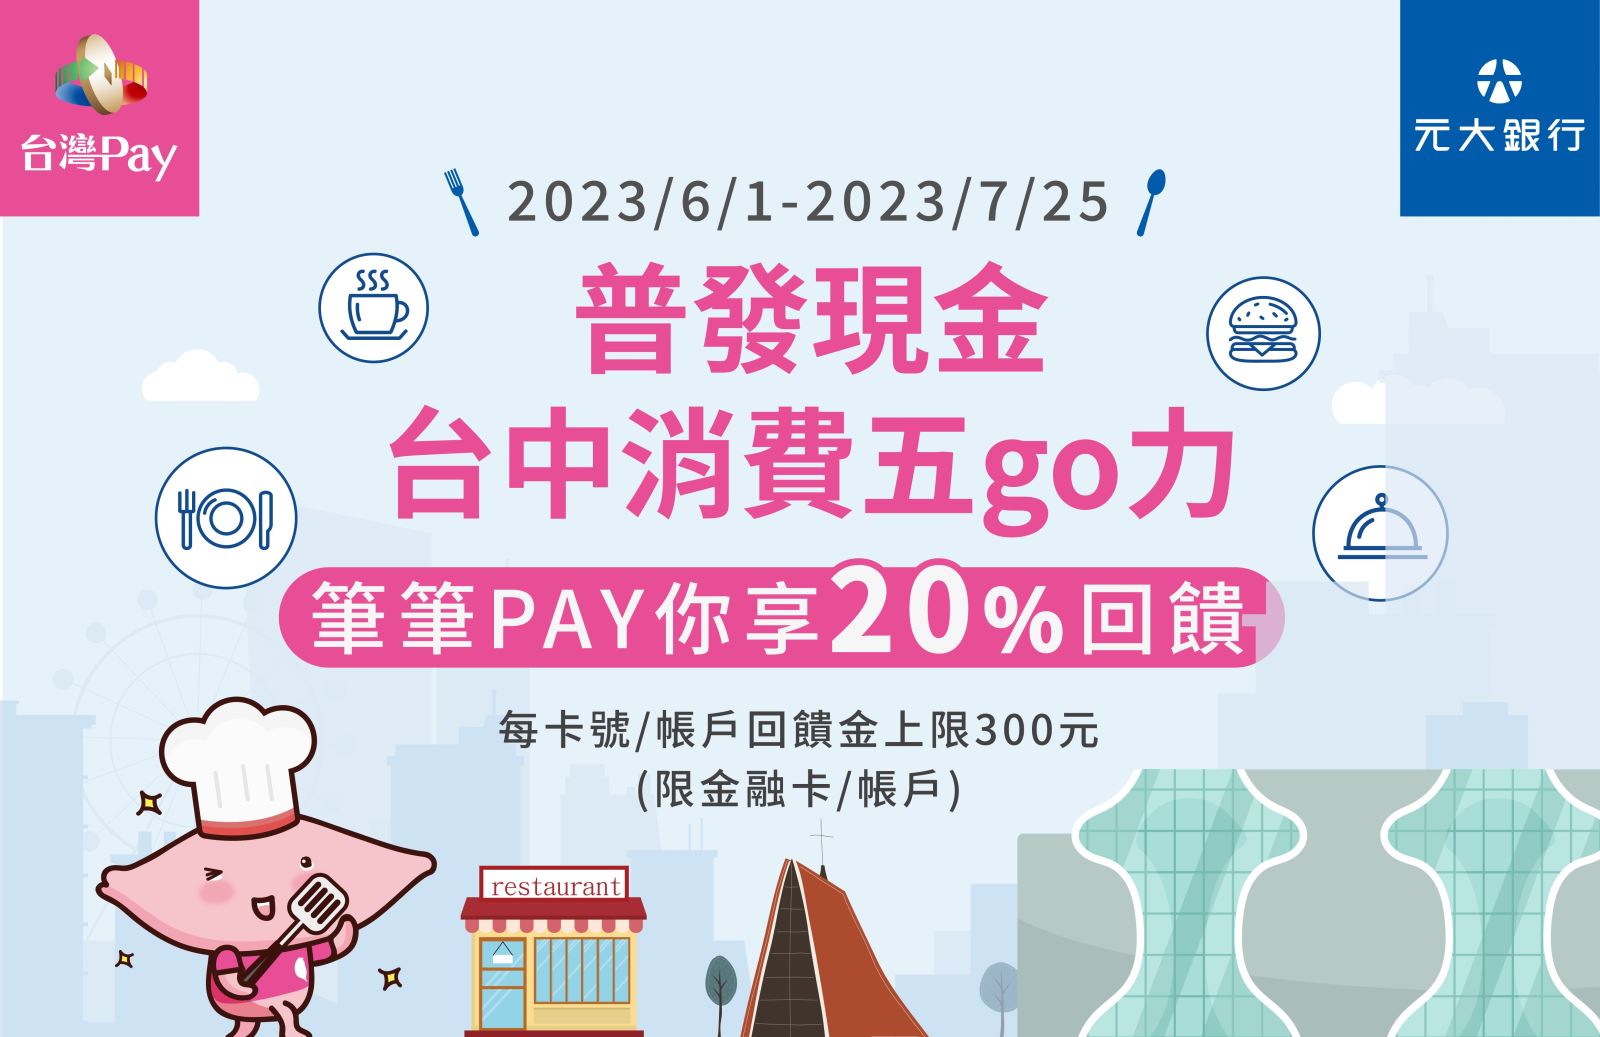 出示「台灣Pay」付款碼或以QR Code掃碼進行支付，單筆消費不限金額可享20%現金回饋，單筆回饋上限新臺幣100元